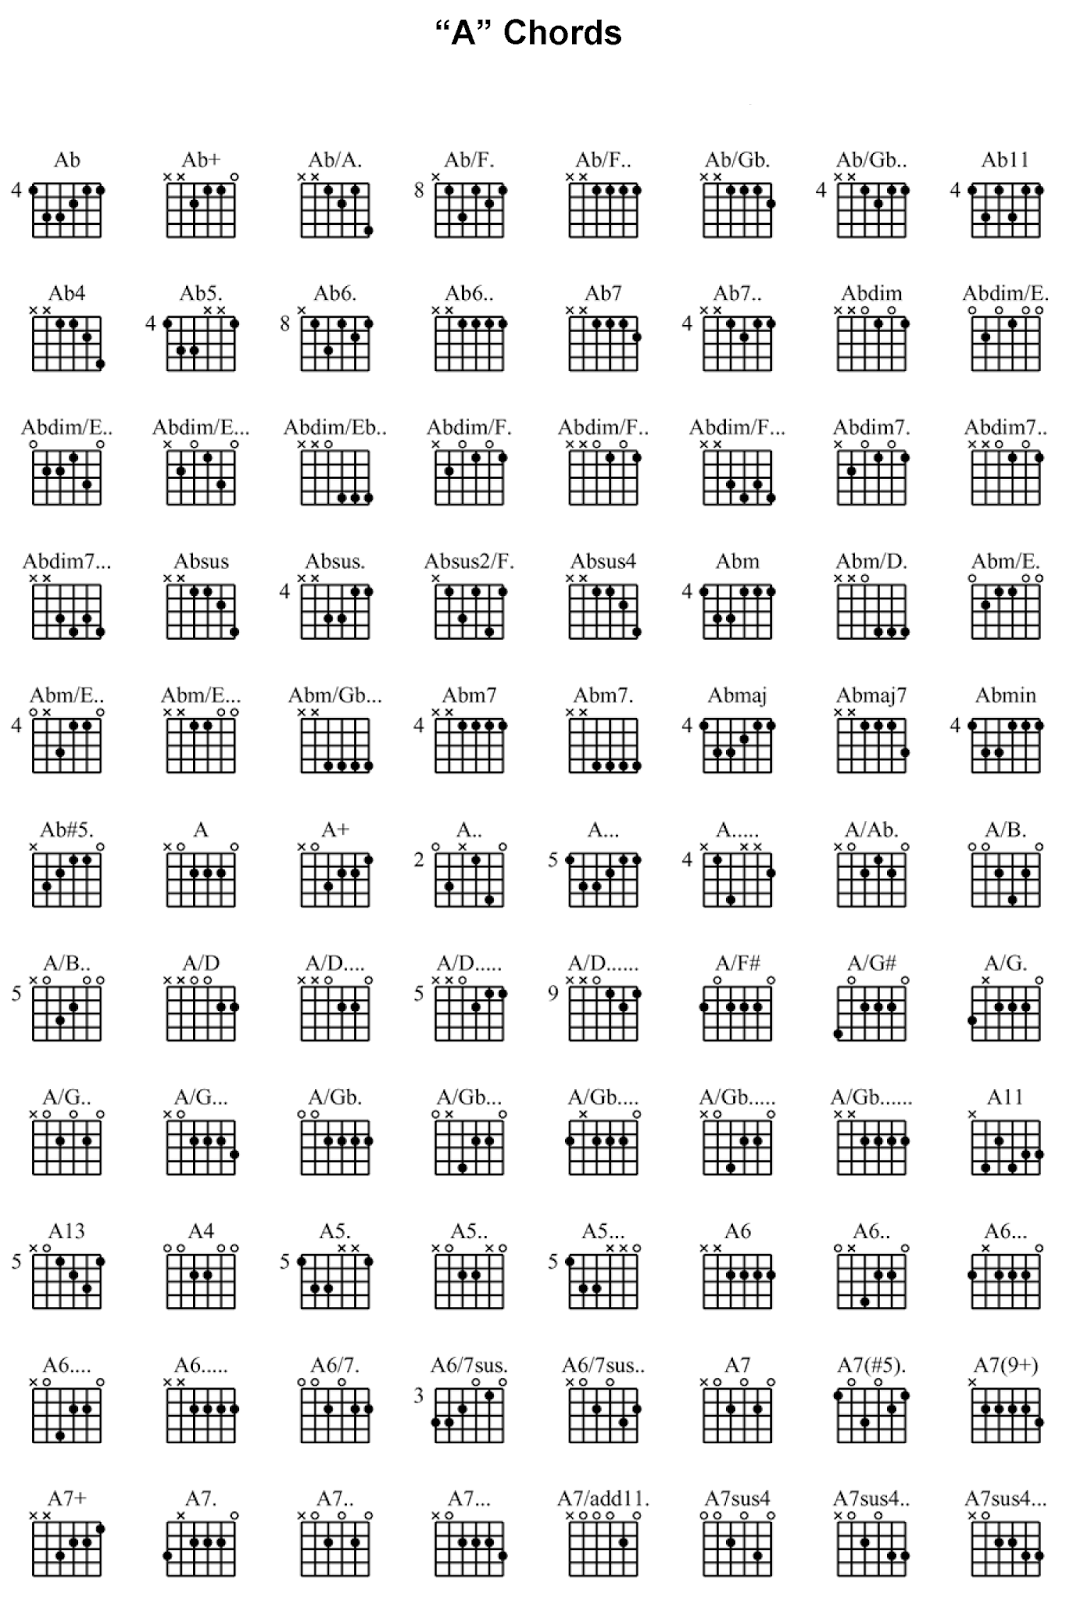 Найти аккорды для гитары. Таблица аккордов для гитары 6 струн. Аккорды на 6 струнной гитаре. Схемы аккордов 6 струнной гитары. Таблица открытых аккордов для гитары.